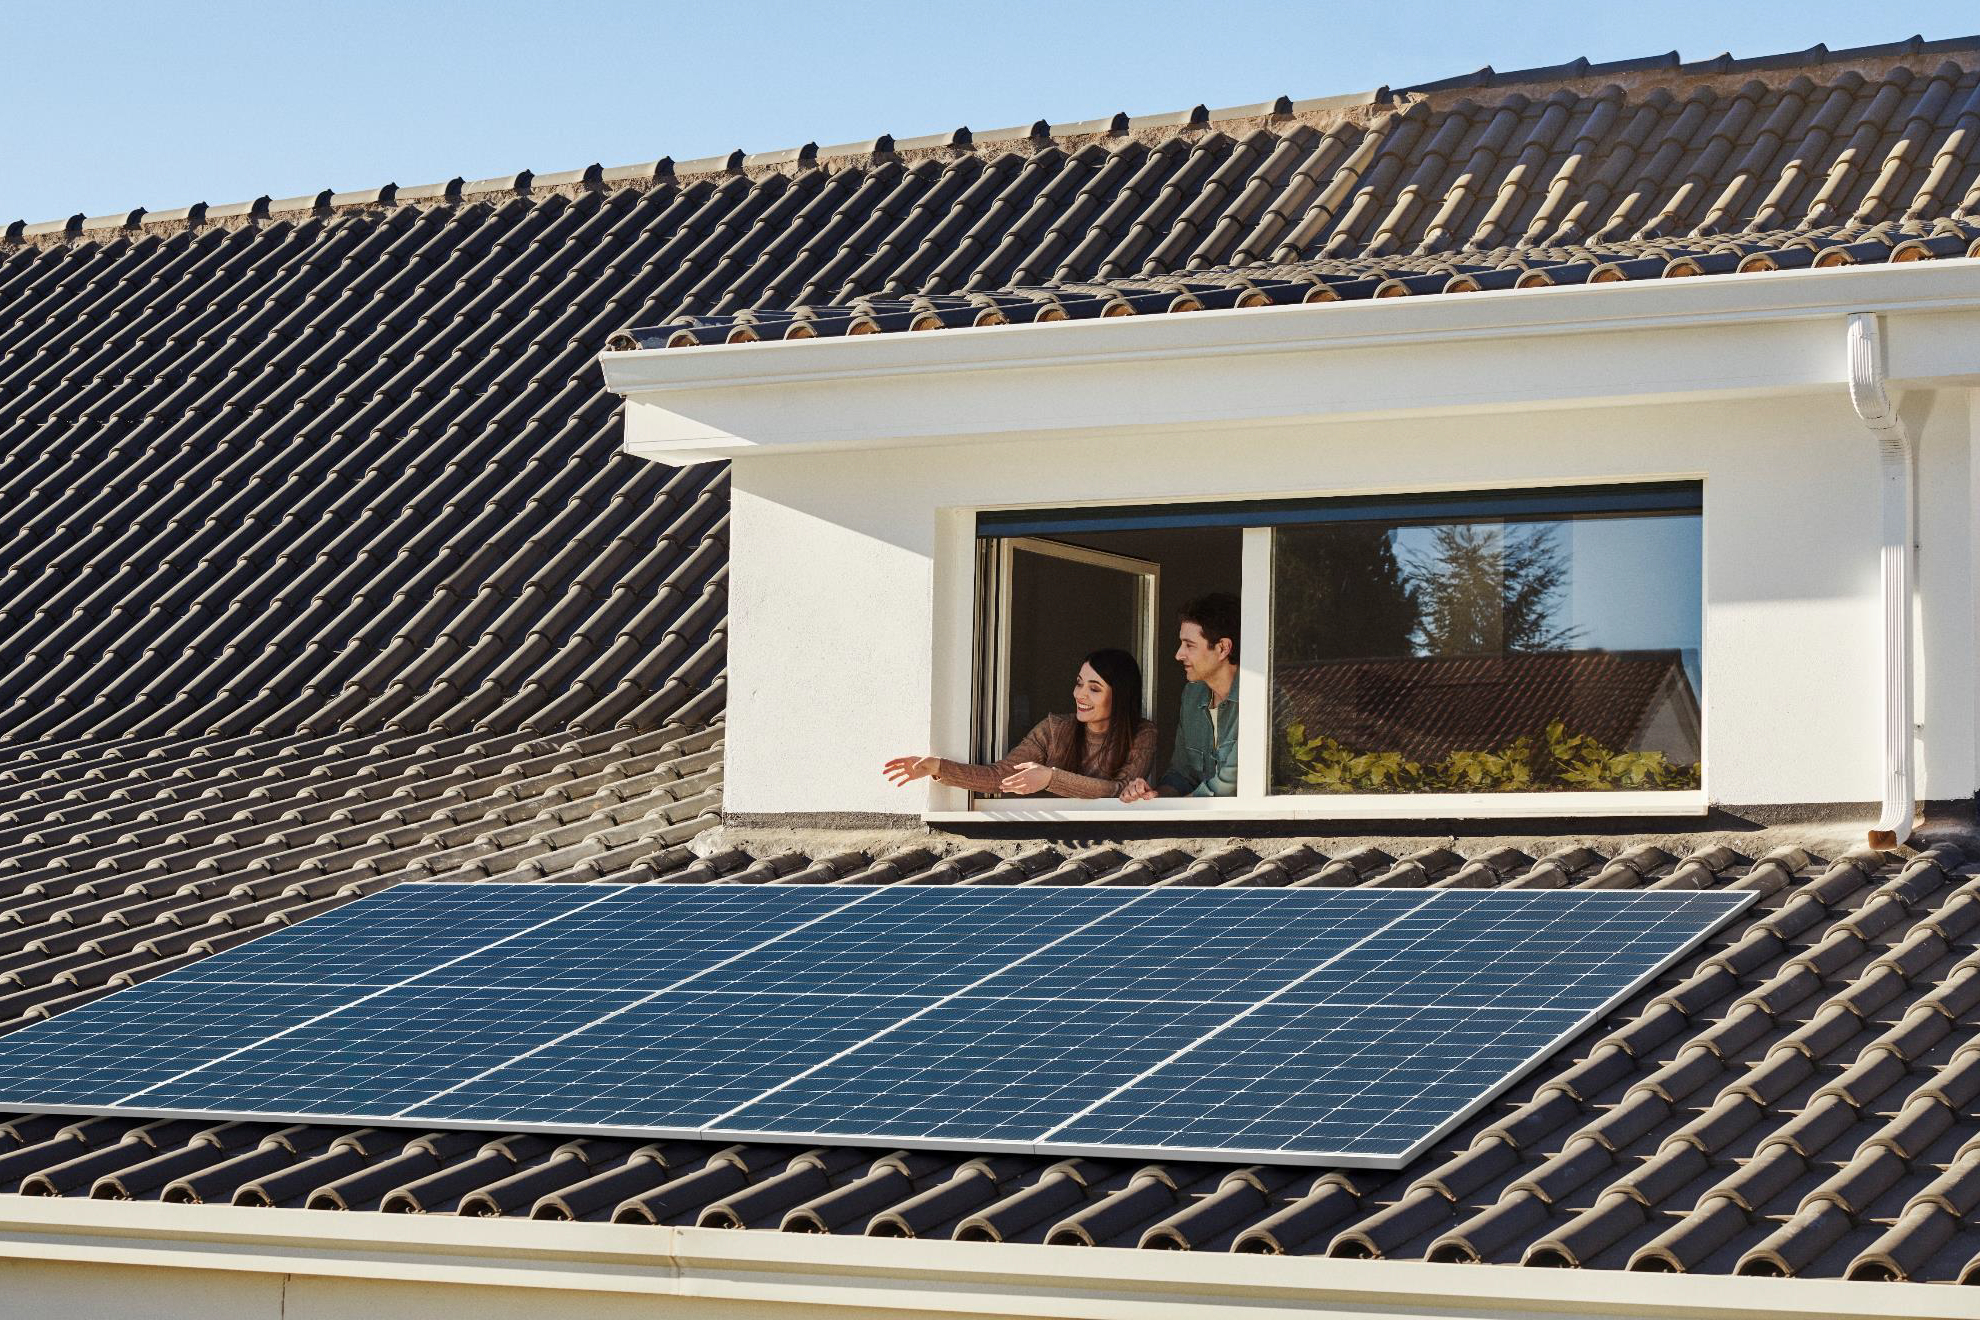 Las placas solares se pueden instalar tanto en viviendas unifamiliares como edificios en altura con grandes ventajas para los usuarios.